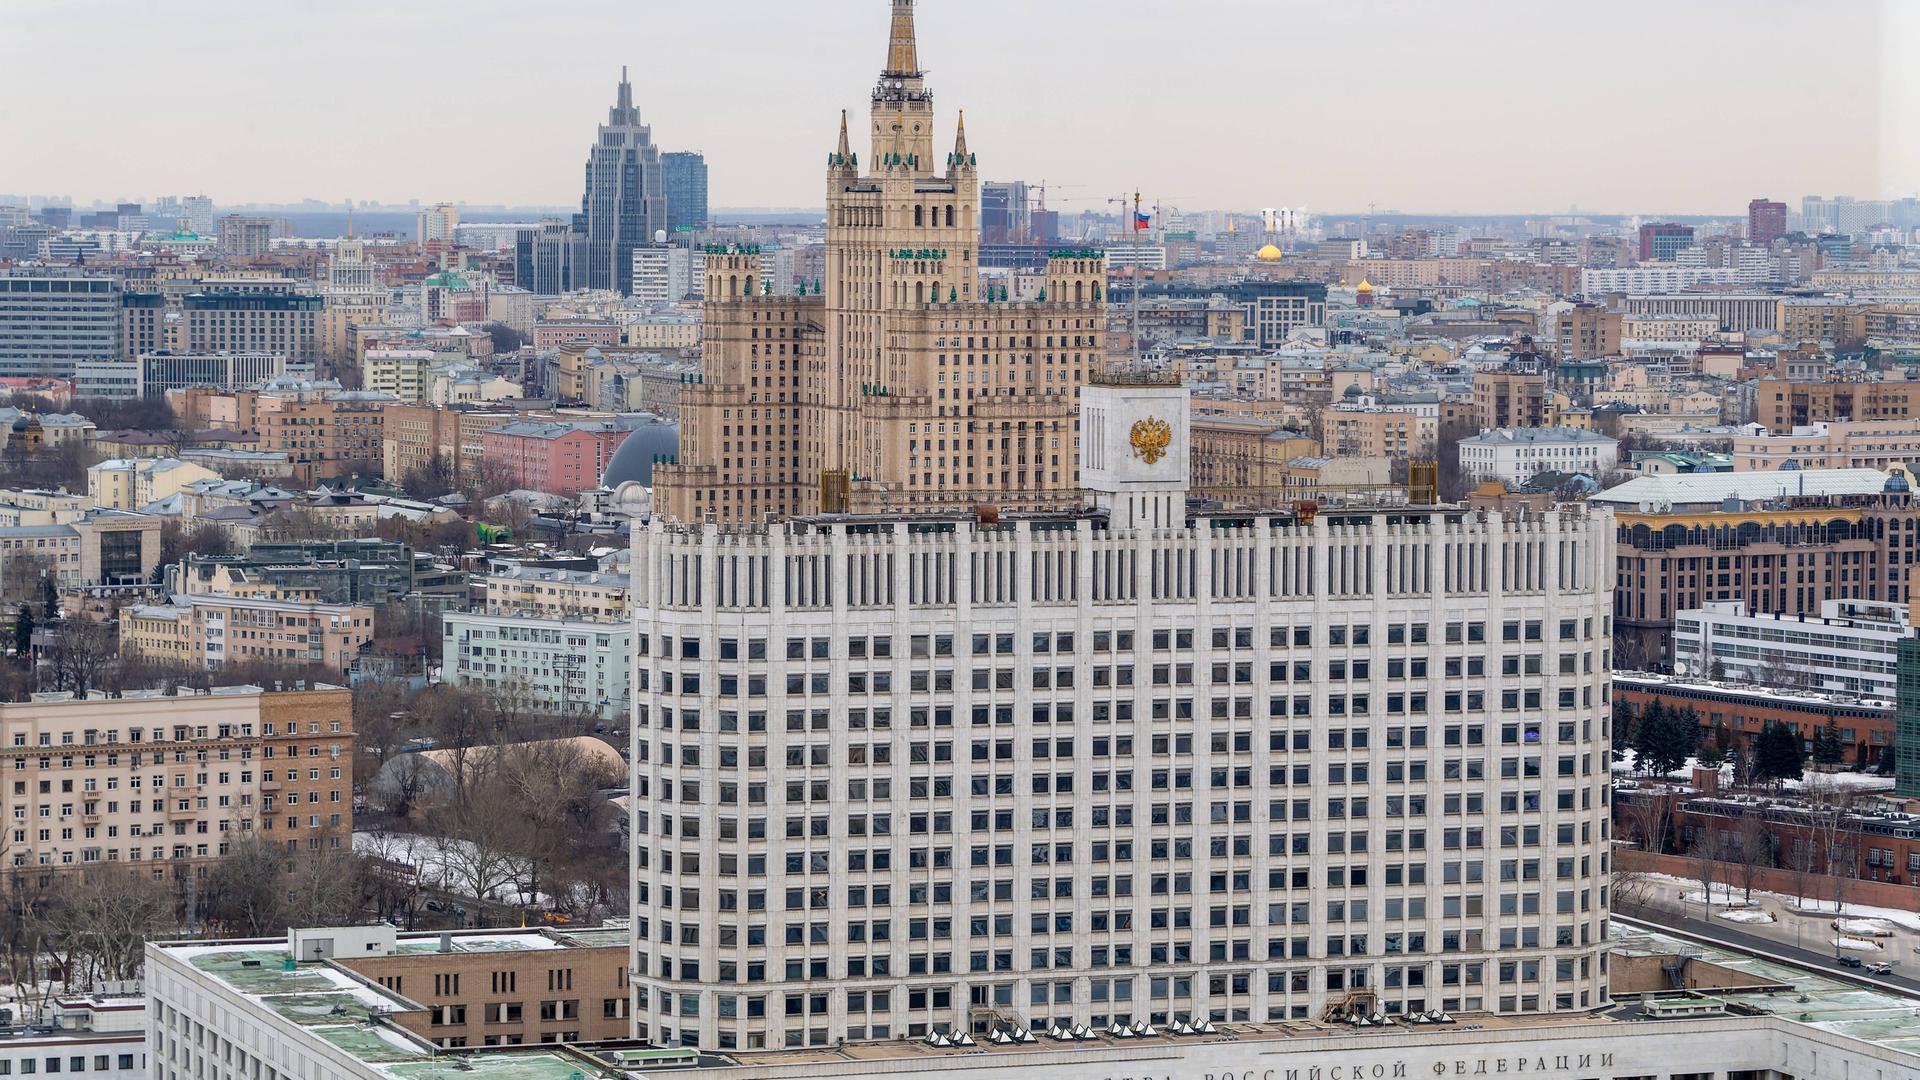 Eine Luftansicht des Regierungsgebäudes der russischen Regierung in Moskau. Im Hintergrund sieht man die Moskauer Innenstadt.